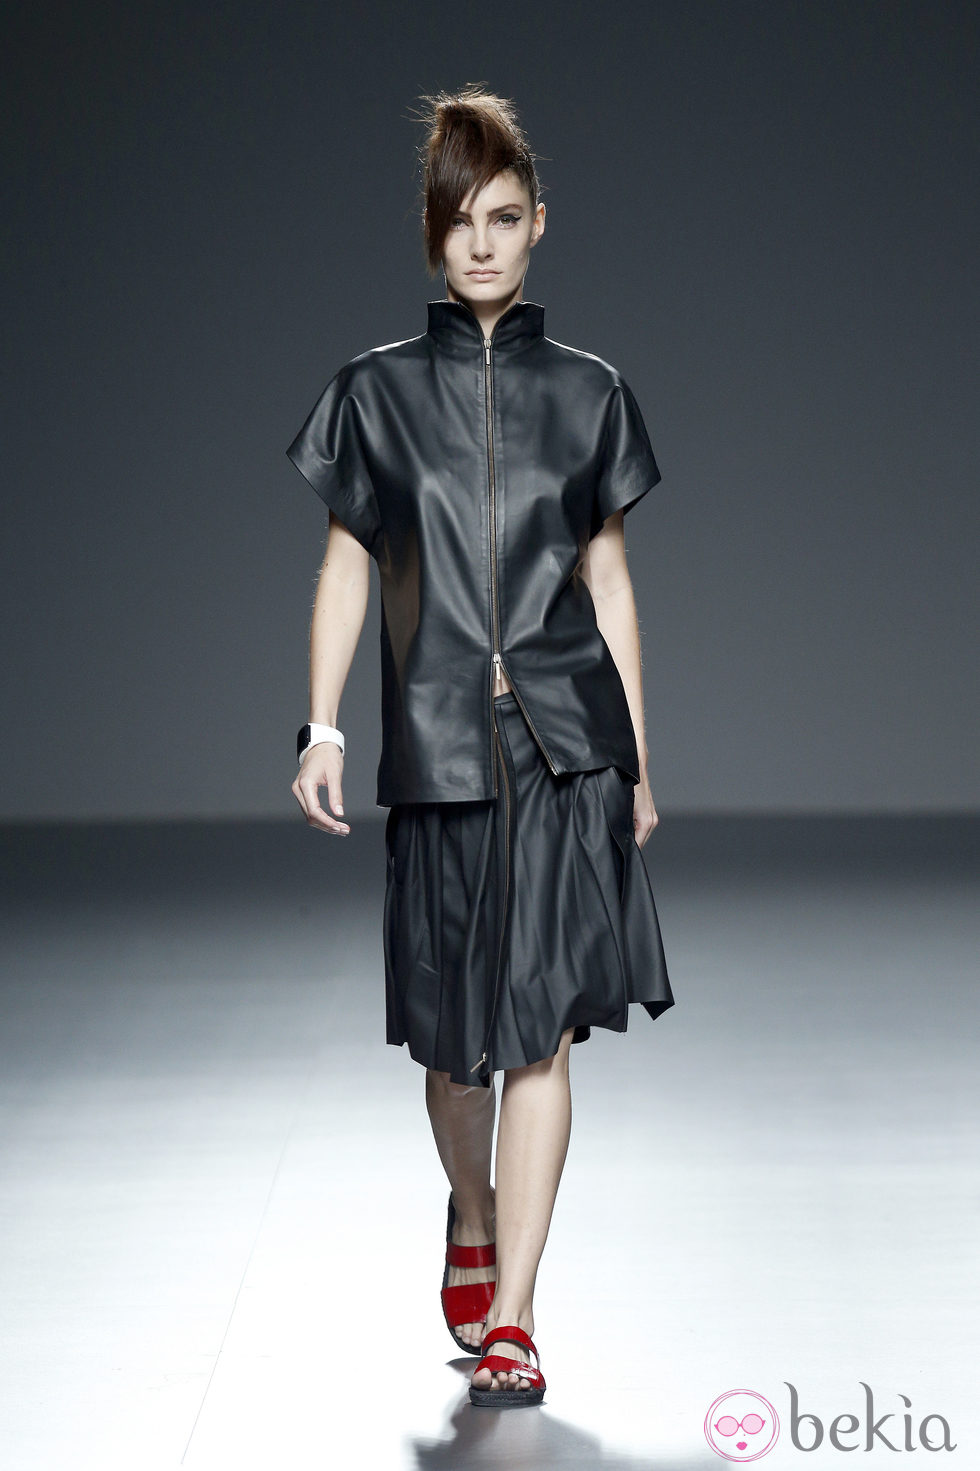 Chaqueta y falda negra de piel de primavera/verano 2015 de Etxeberría en Madrid Fashion Week